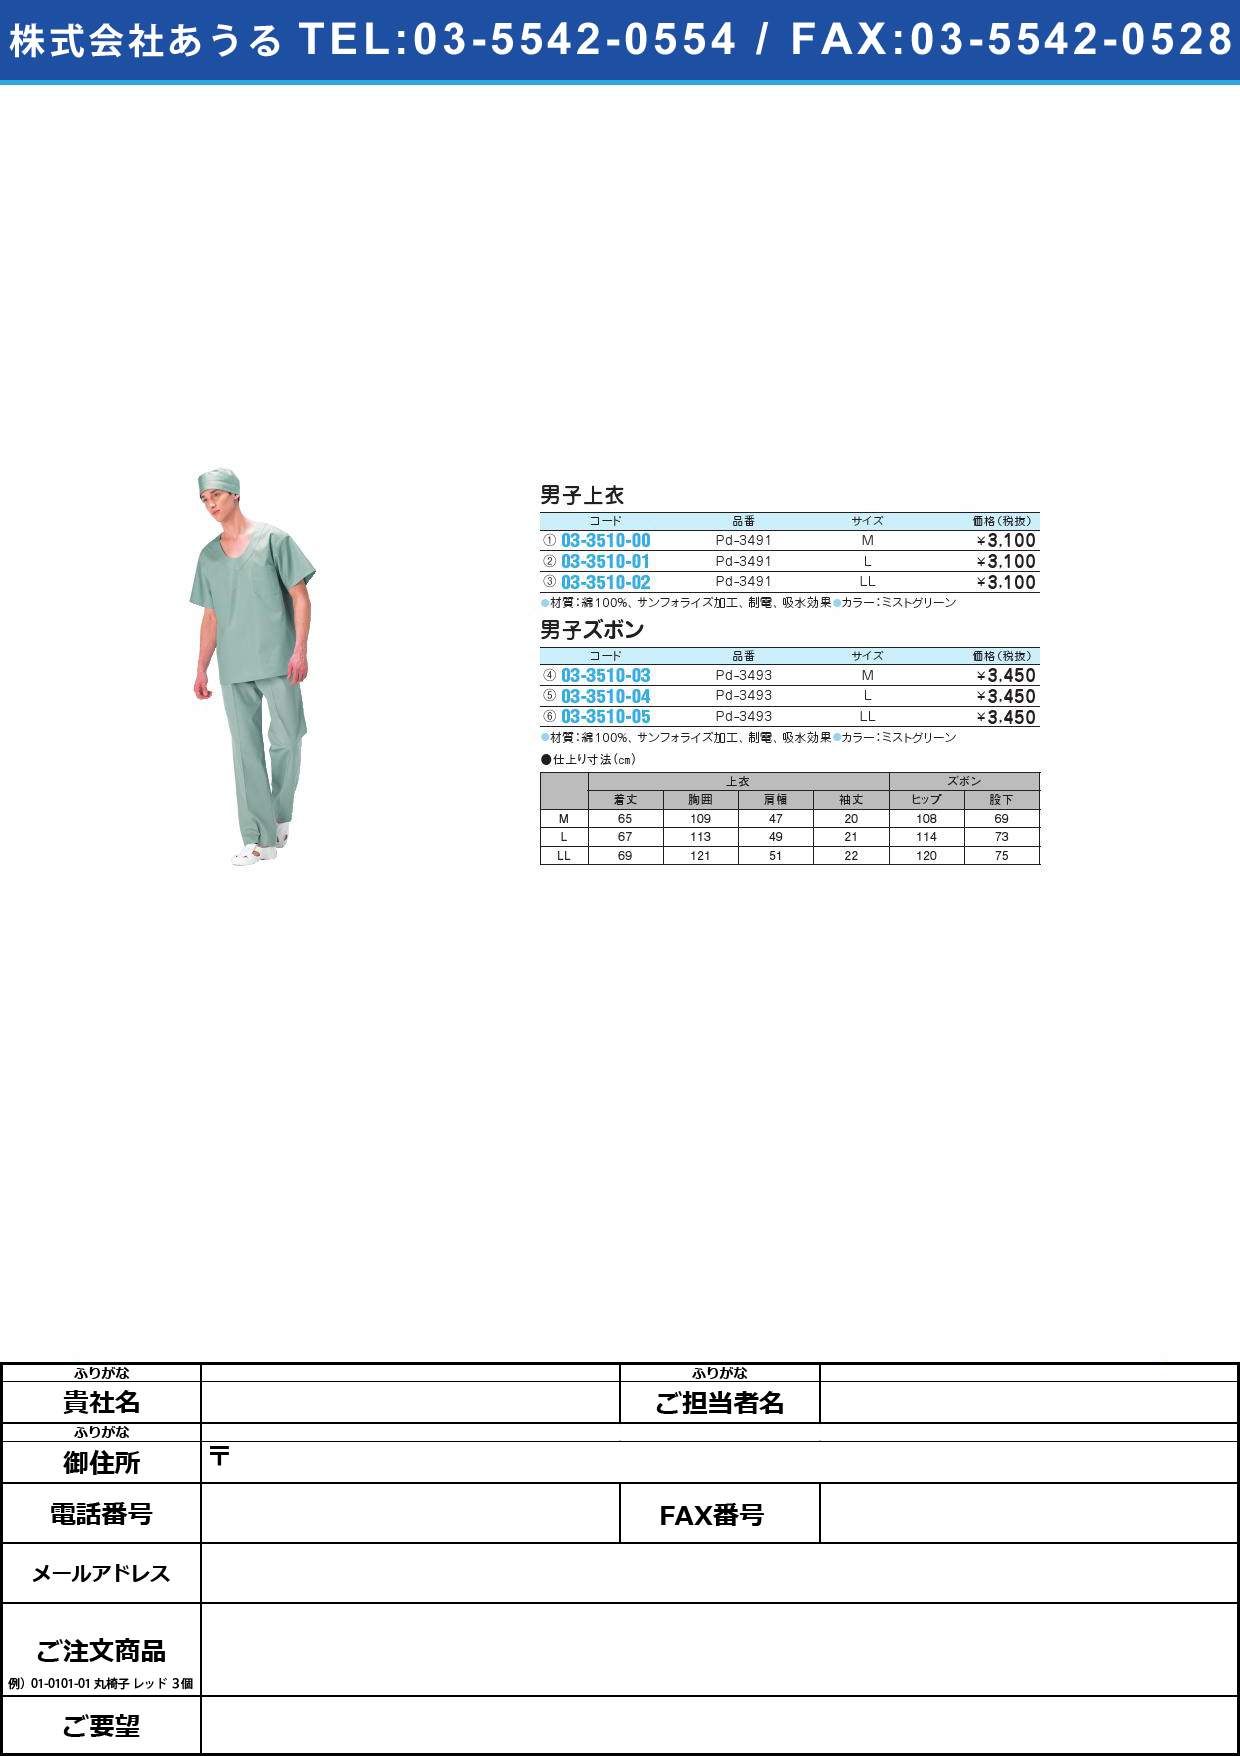 (03-3510-03)男子ズボン PD-3493(M)ﾐｽﾄｸﾞﾘｰﾝﾀﾞﾝｼｽﾞﾎﾞﾝ(03-3510-03)【1枚単位】【2013年カタログ商品】